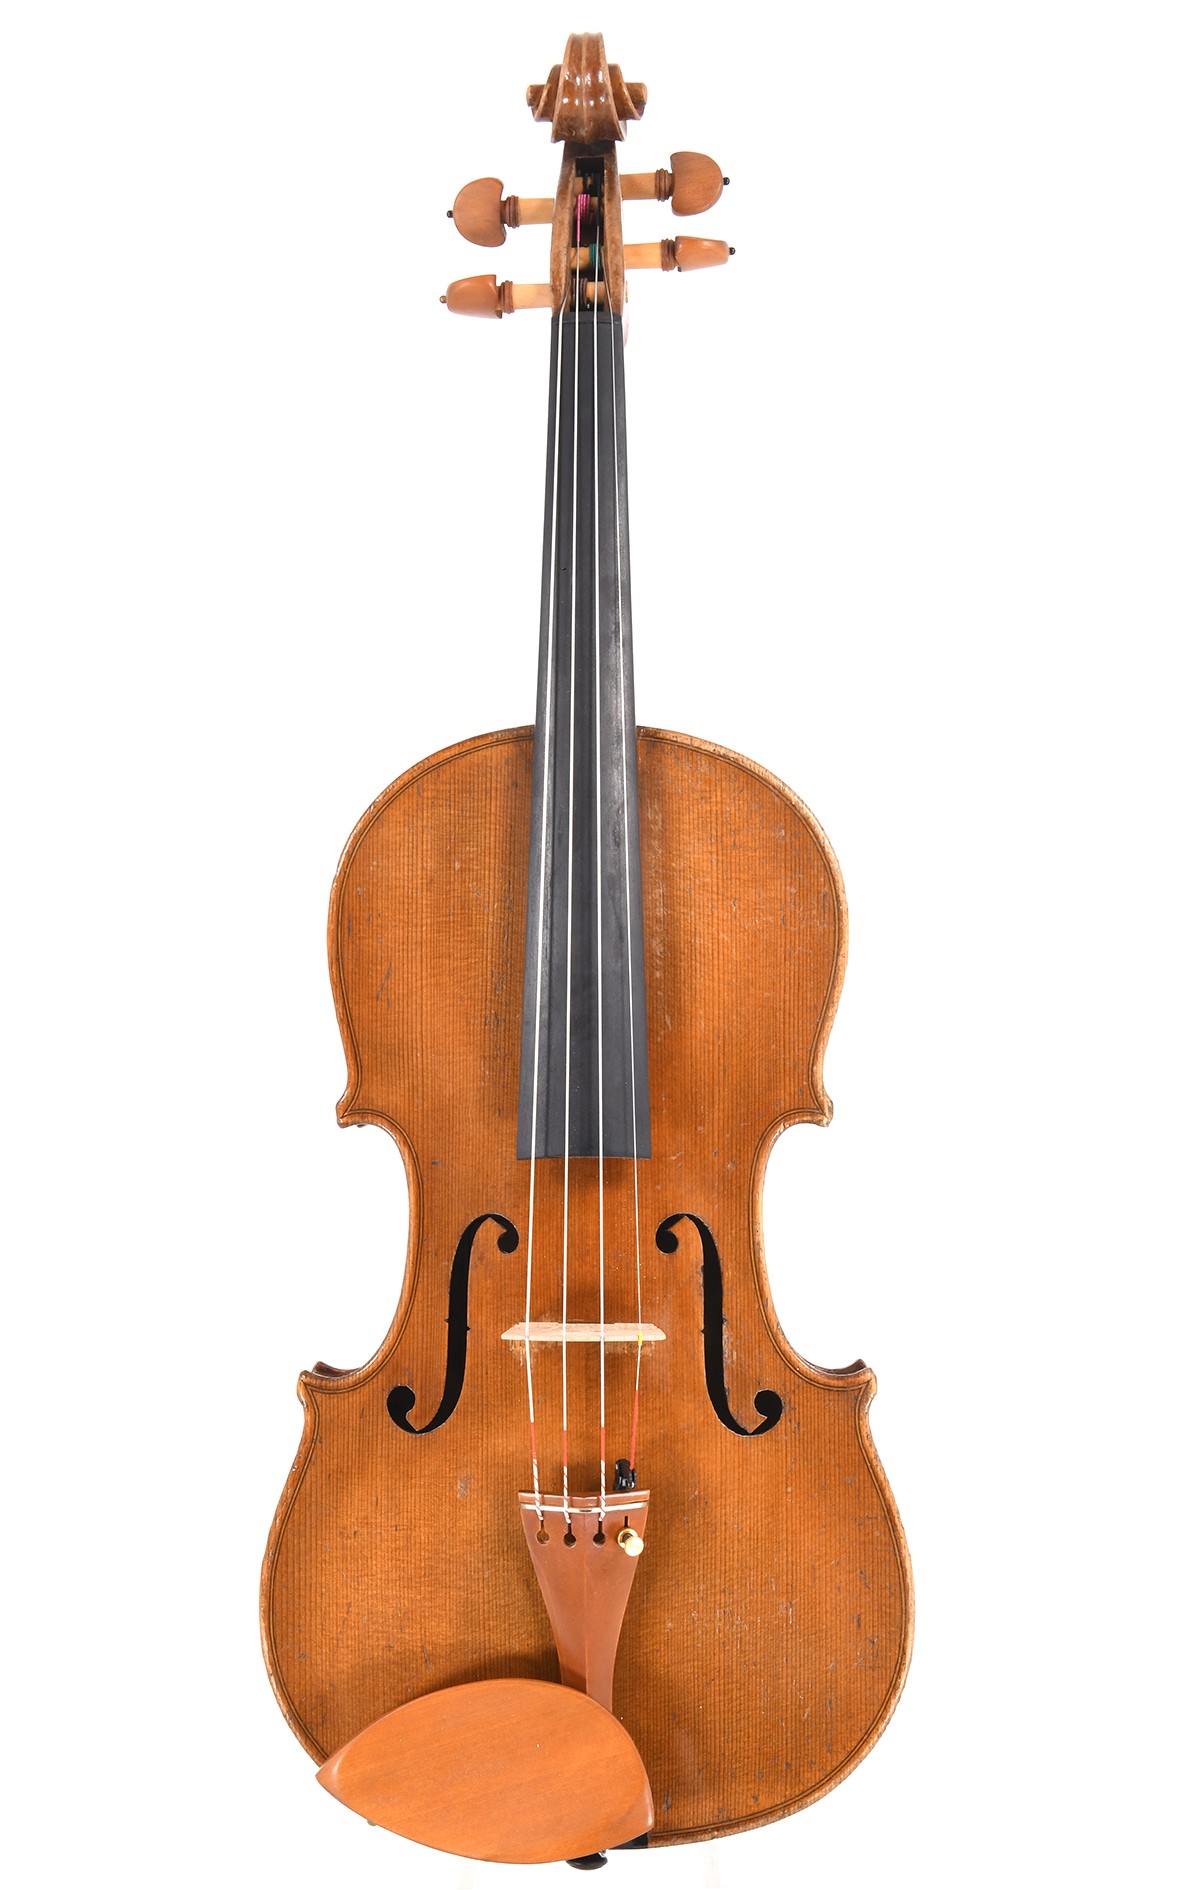 Antique German violin by Ackermann & Lesser, Dresden